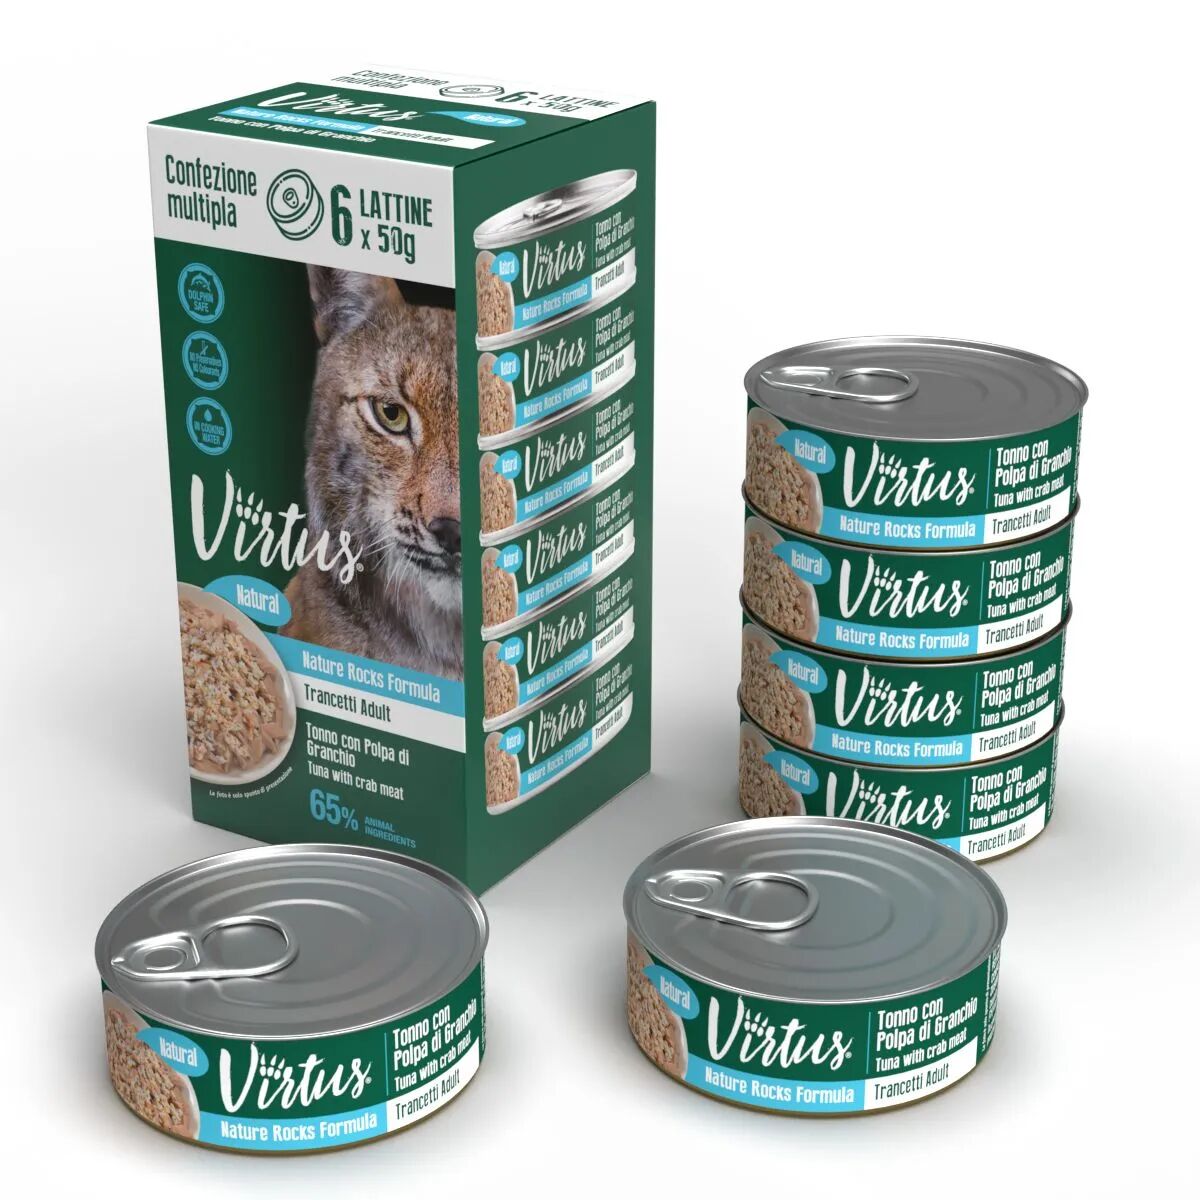 VIRTUS Cat Natural Multipack 6X50G TONNO CON POLPA DI GRANCHIO